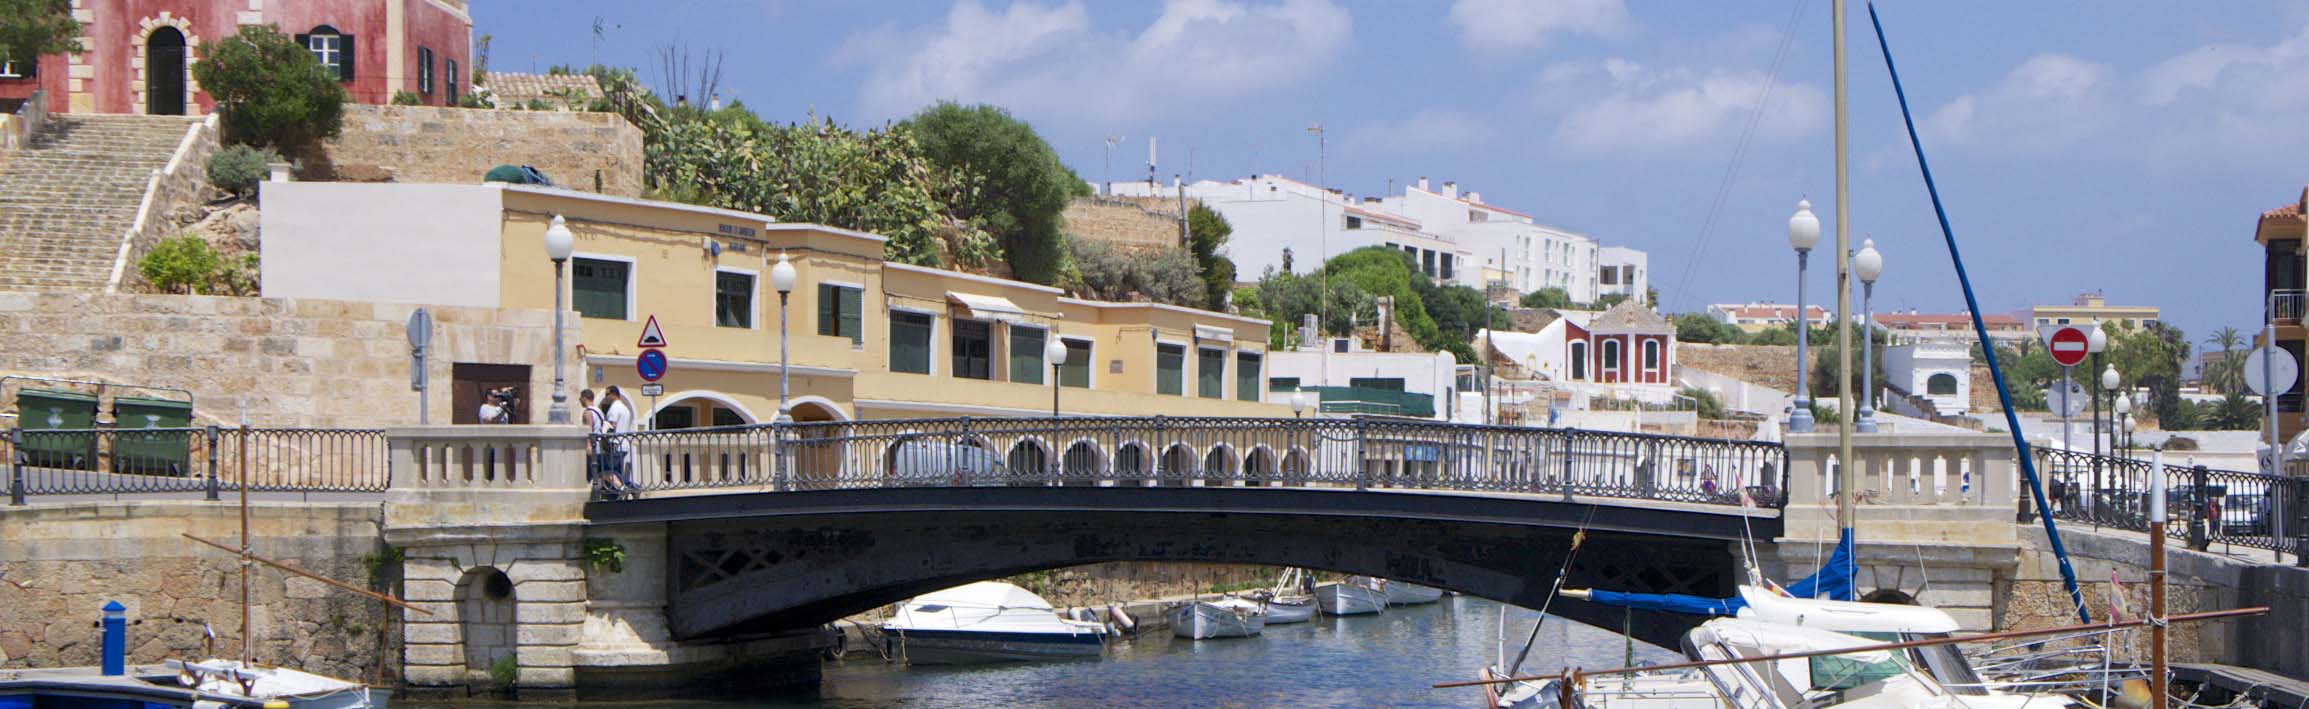 Imatge recurs del port de destinació Menorca (Ciutadella) per a la ruta en ferry Barcelona - Menorca (Ciutadella)